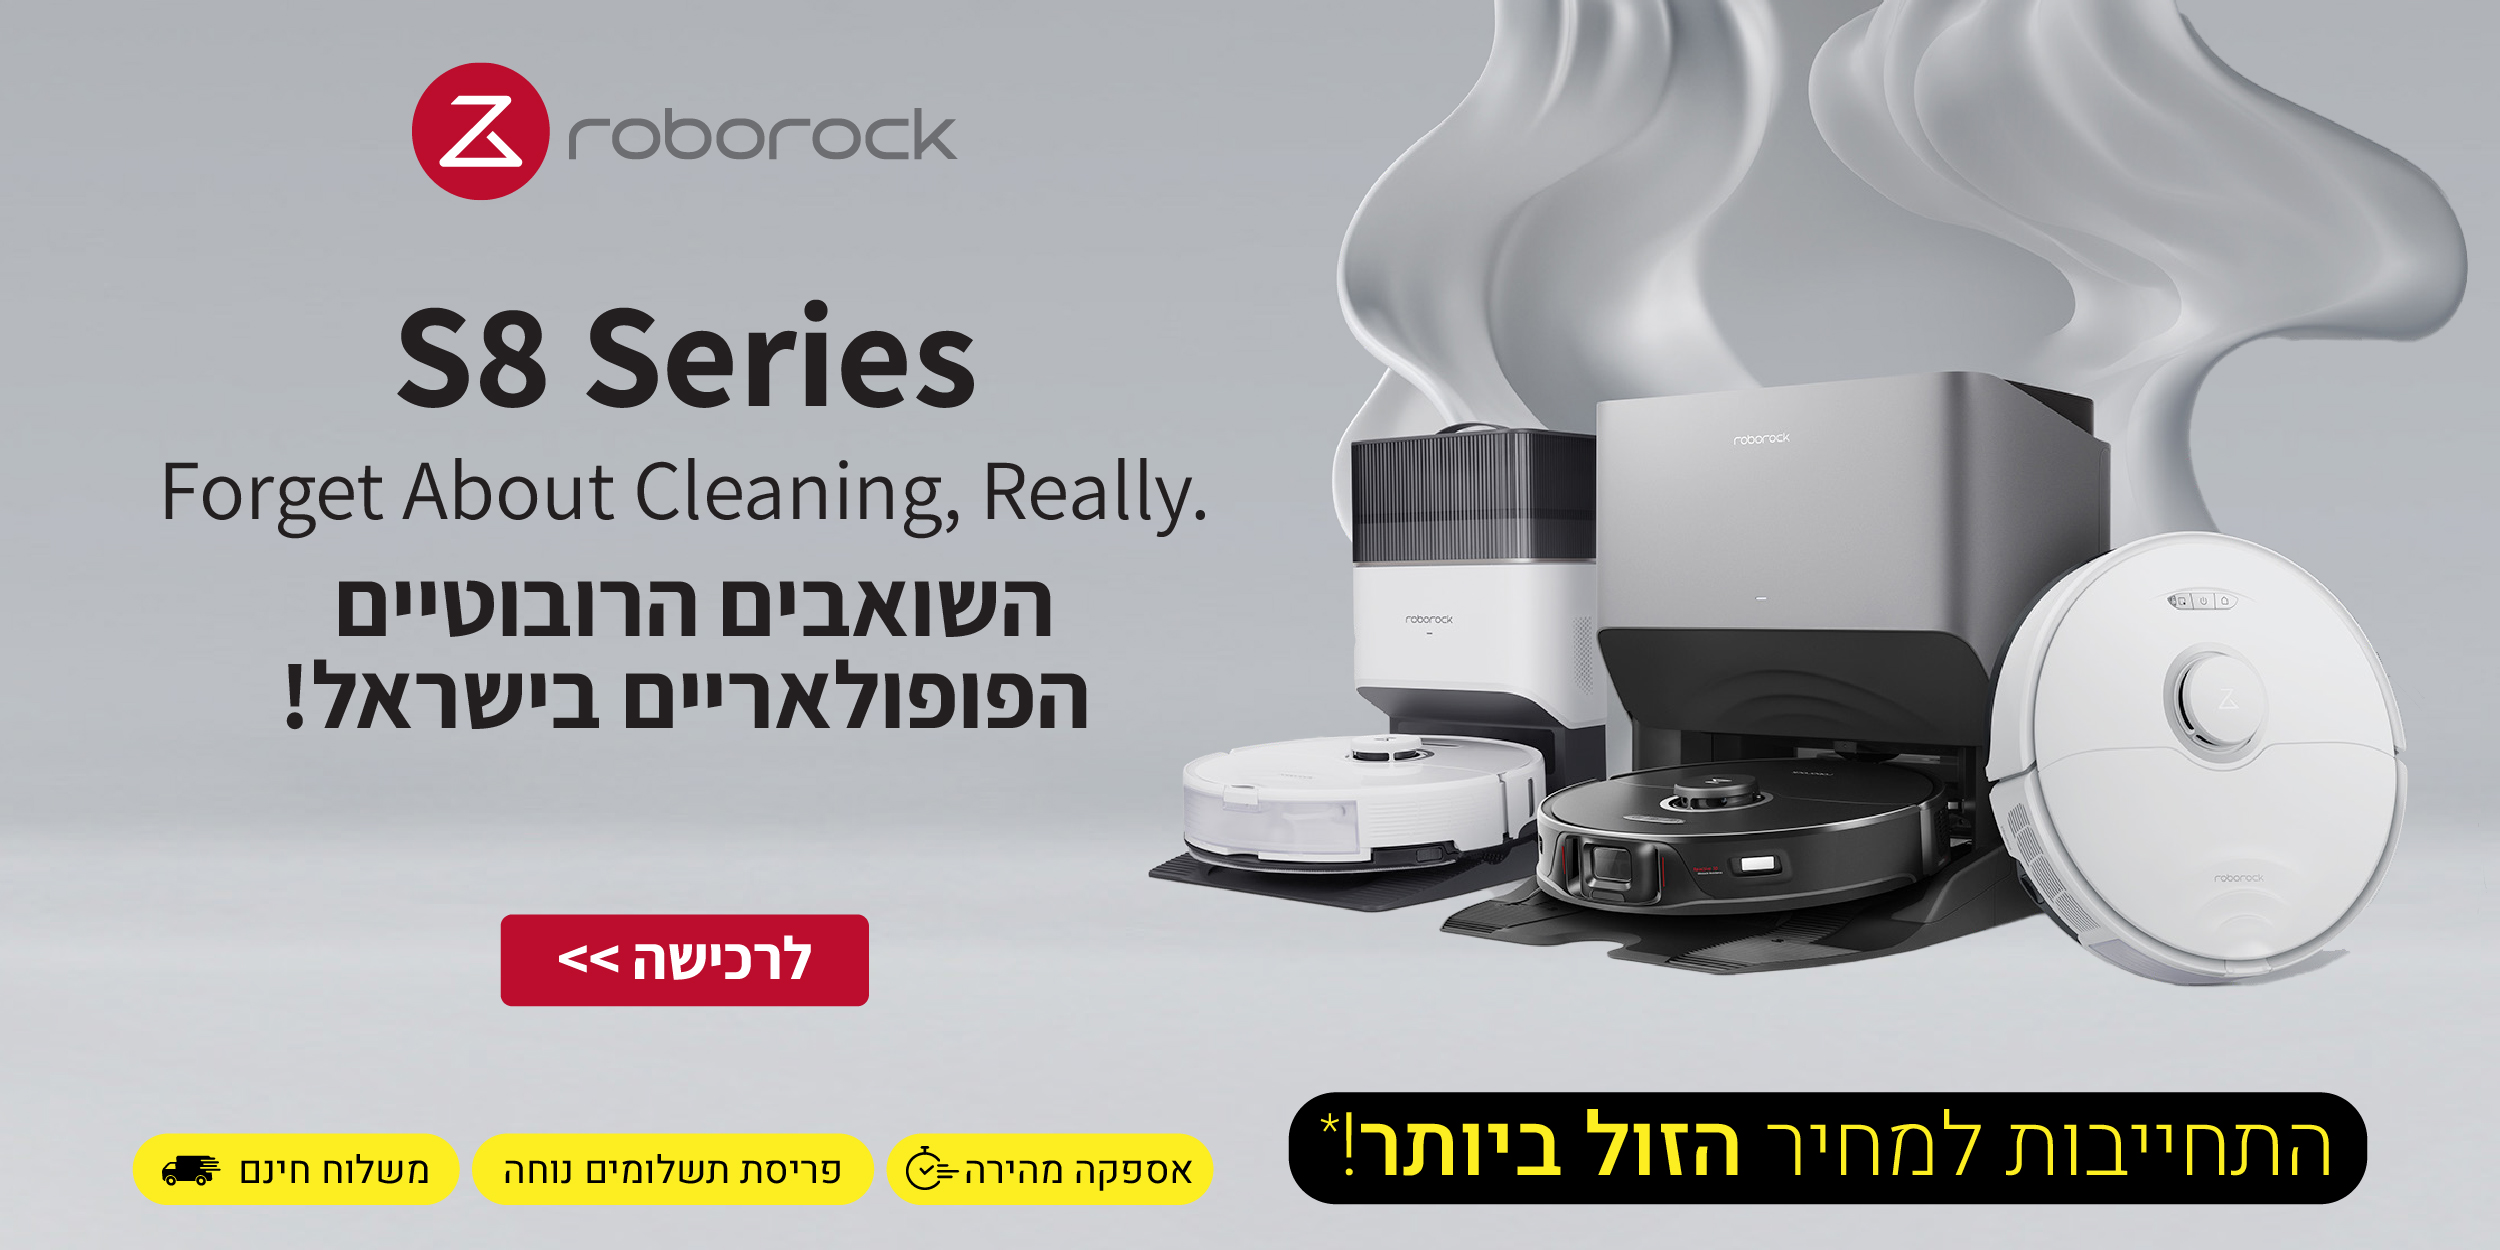 S8 Series Forget About Cleaning,Really.ROBOROCK השואבים הרובוטיים הפופולאריים בישראל! התחייבות למחיר הזול ביותר! אספקה מהירה, פריסת תשלומים נוחה ומשלוח חינם.